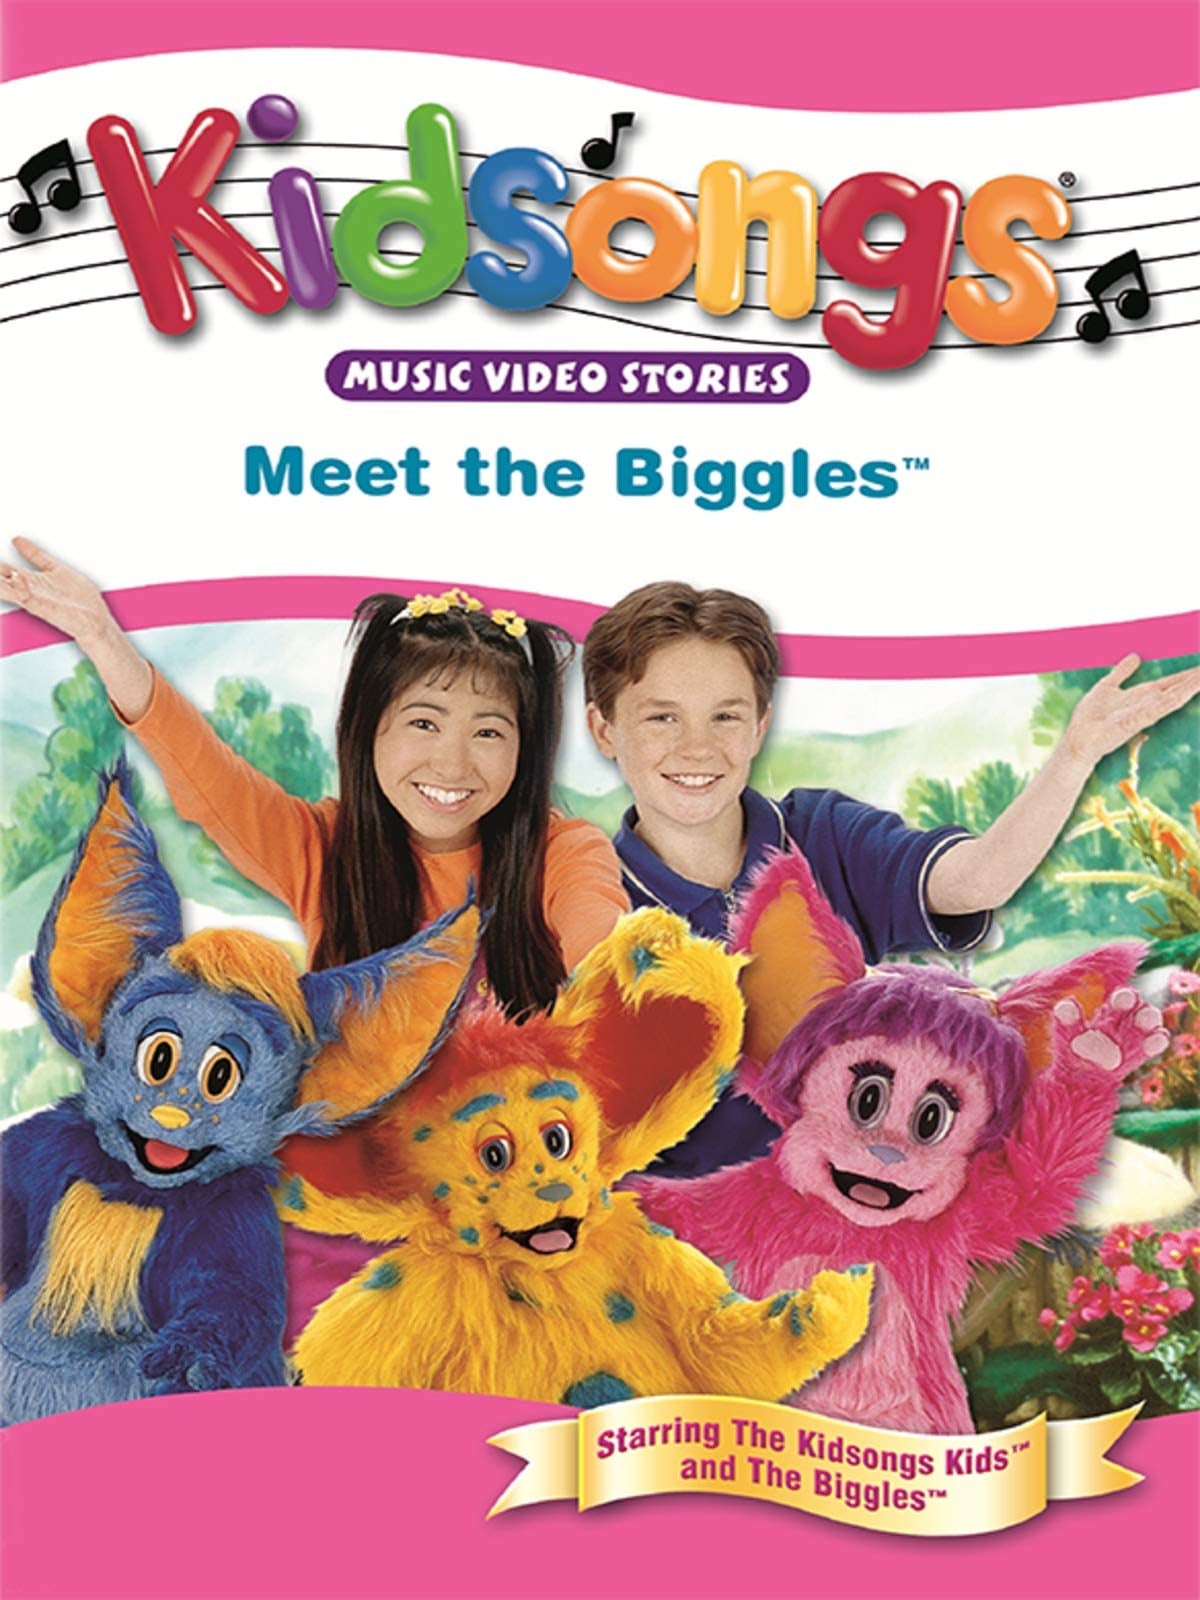 Kidsongs: Meet the Biggles